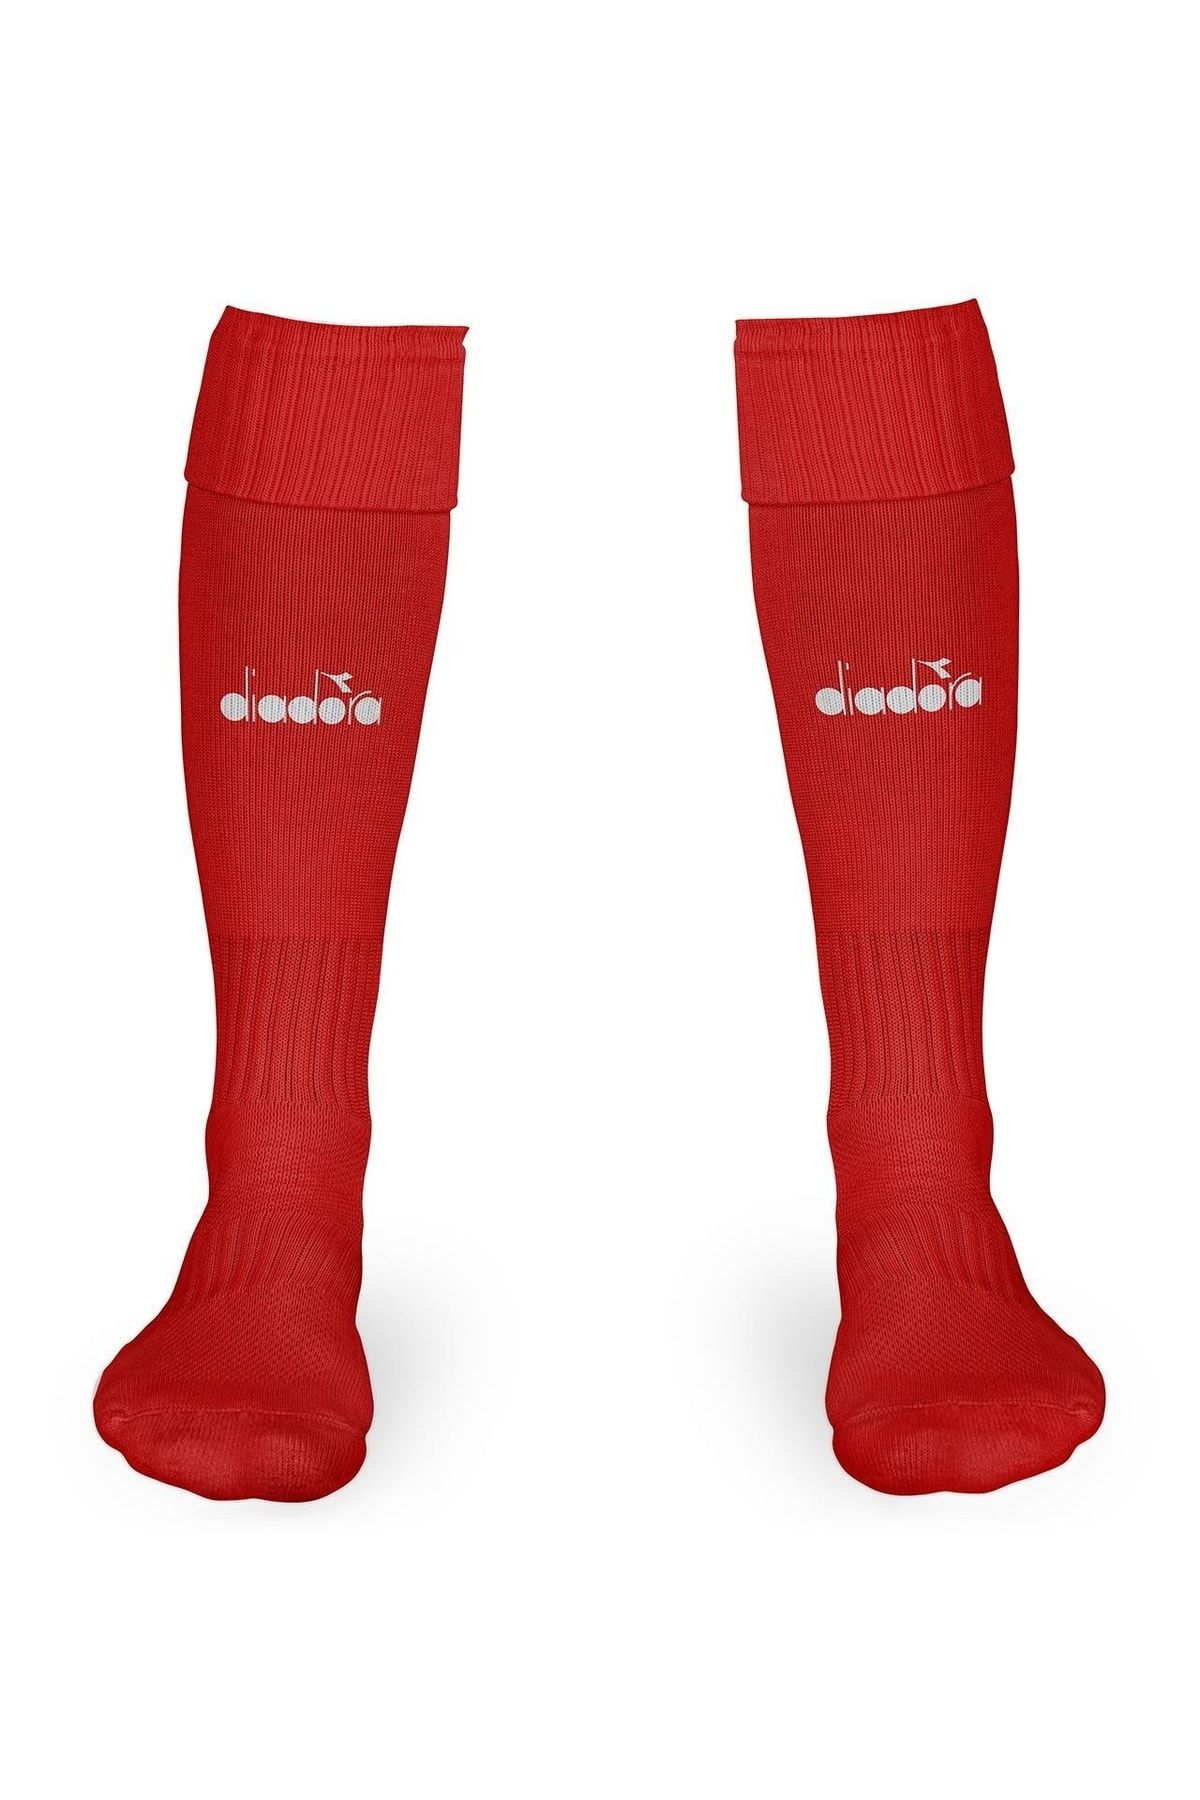 Diadora Orikon - Kırmızı Uzun 40-44 Futbol Çorabı - 41çrp21